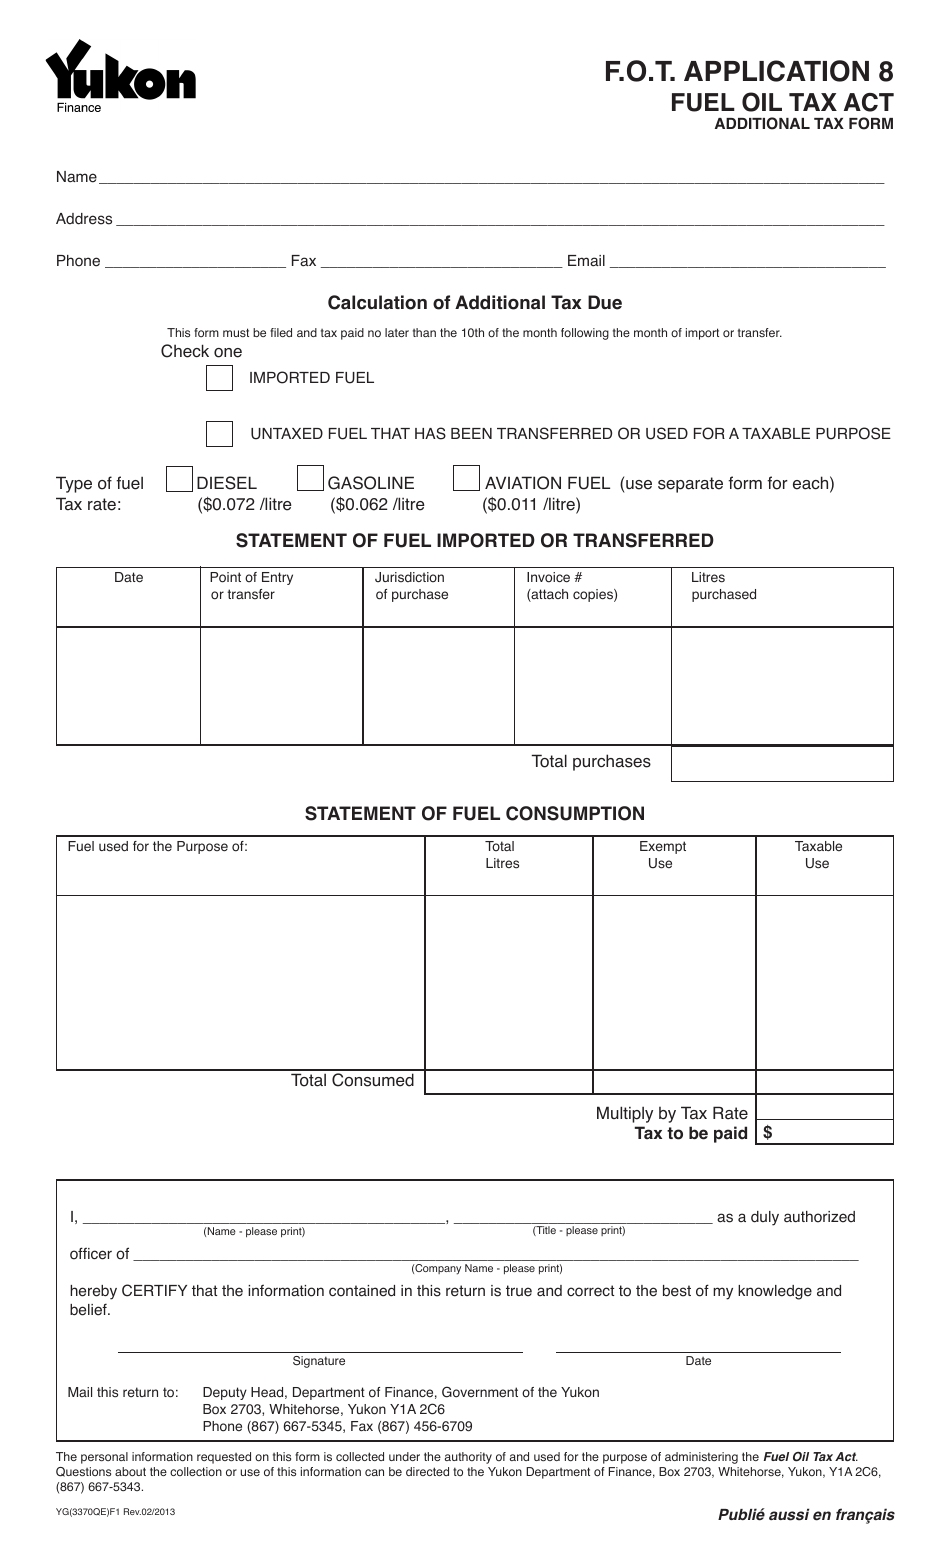 Form YG3370 Fuel Oil Tax - Application 8 - Yukon, Canada, Page 1